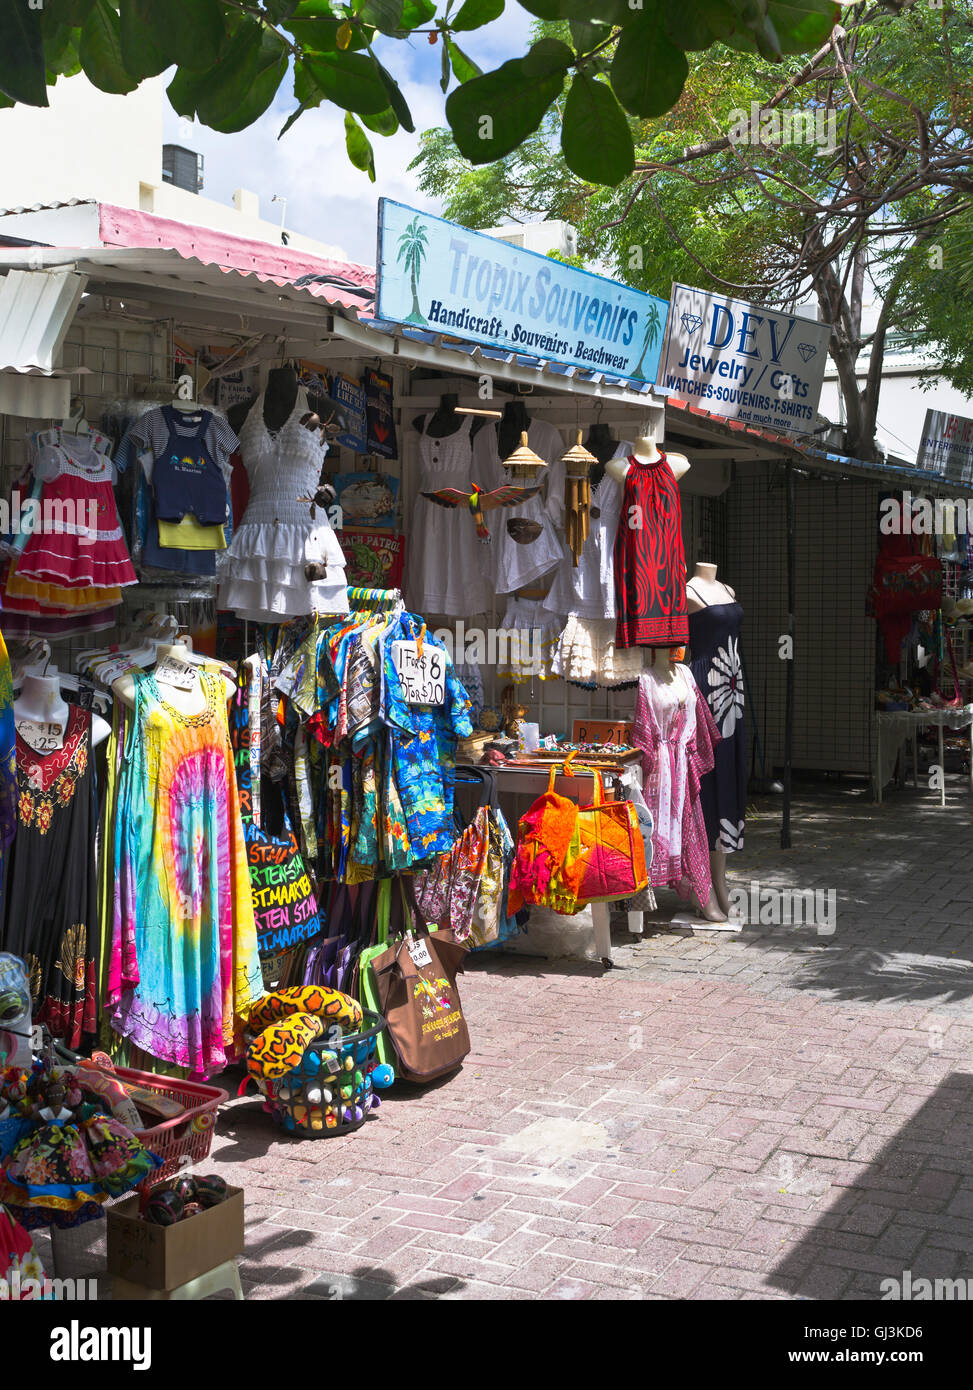 dh Philipsburg ST MAARTEN CARAIBI Indie occidentali vestito e turistico negozio di souvenir mercato stand shopping Foto Stock